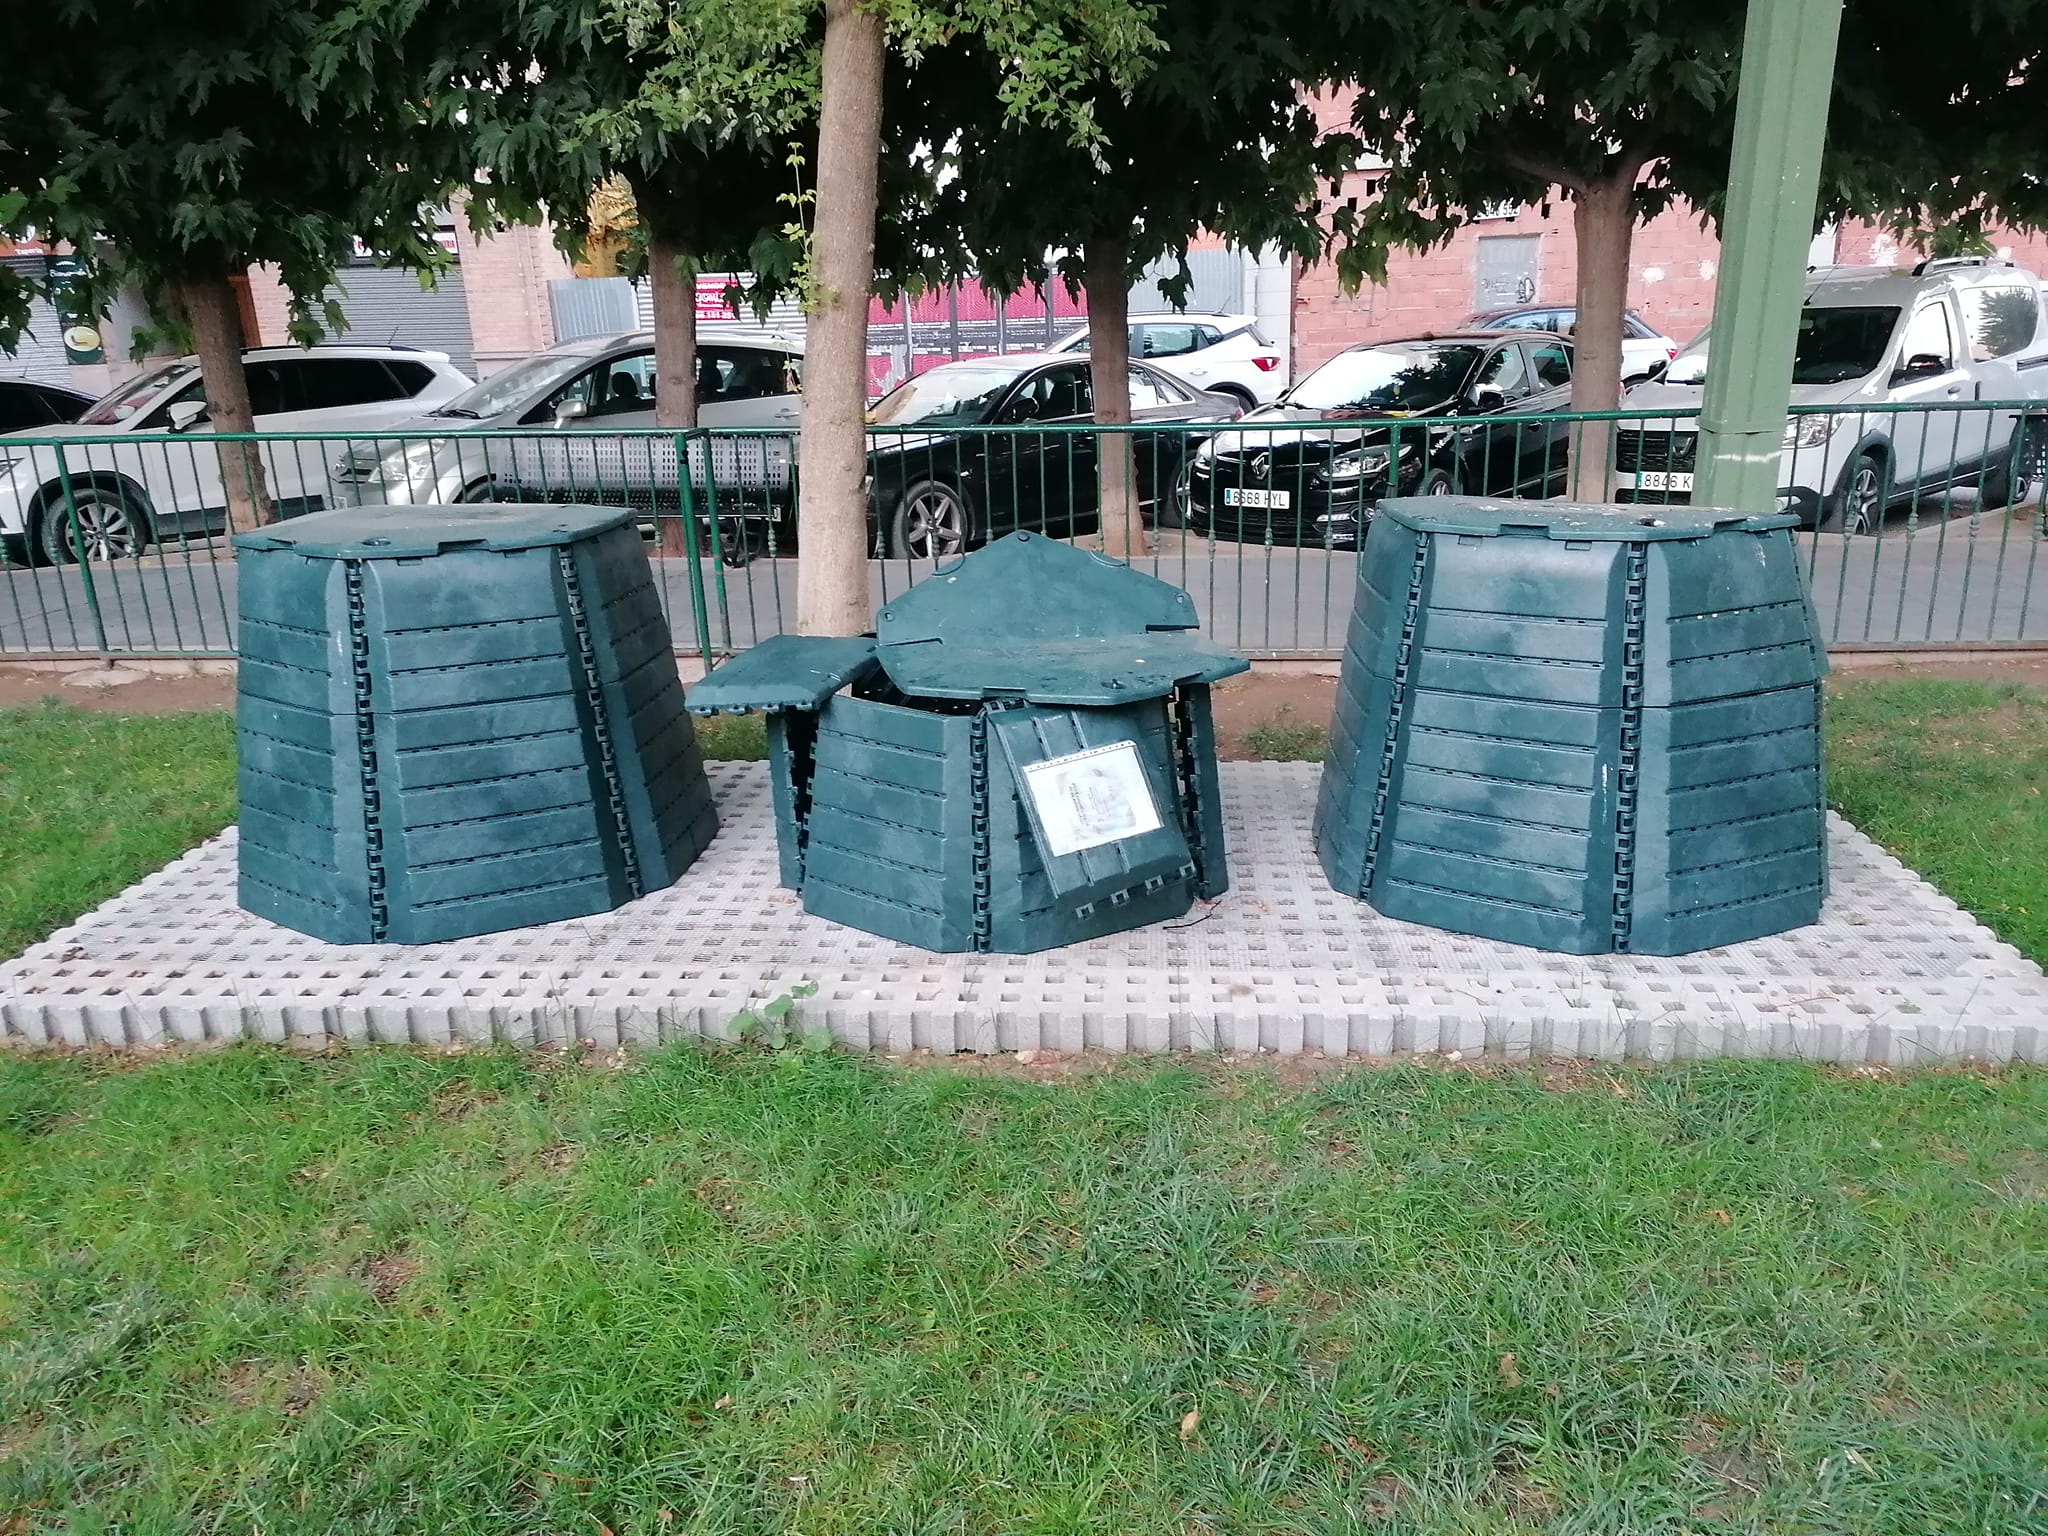 Vuelven a destrozar una de las compostadoras de la plaza El Rollo